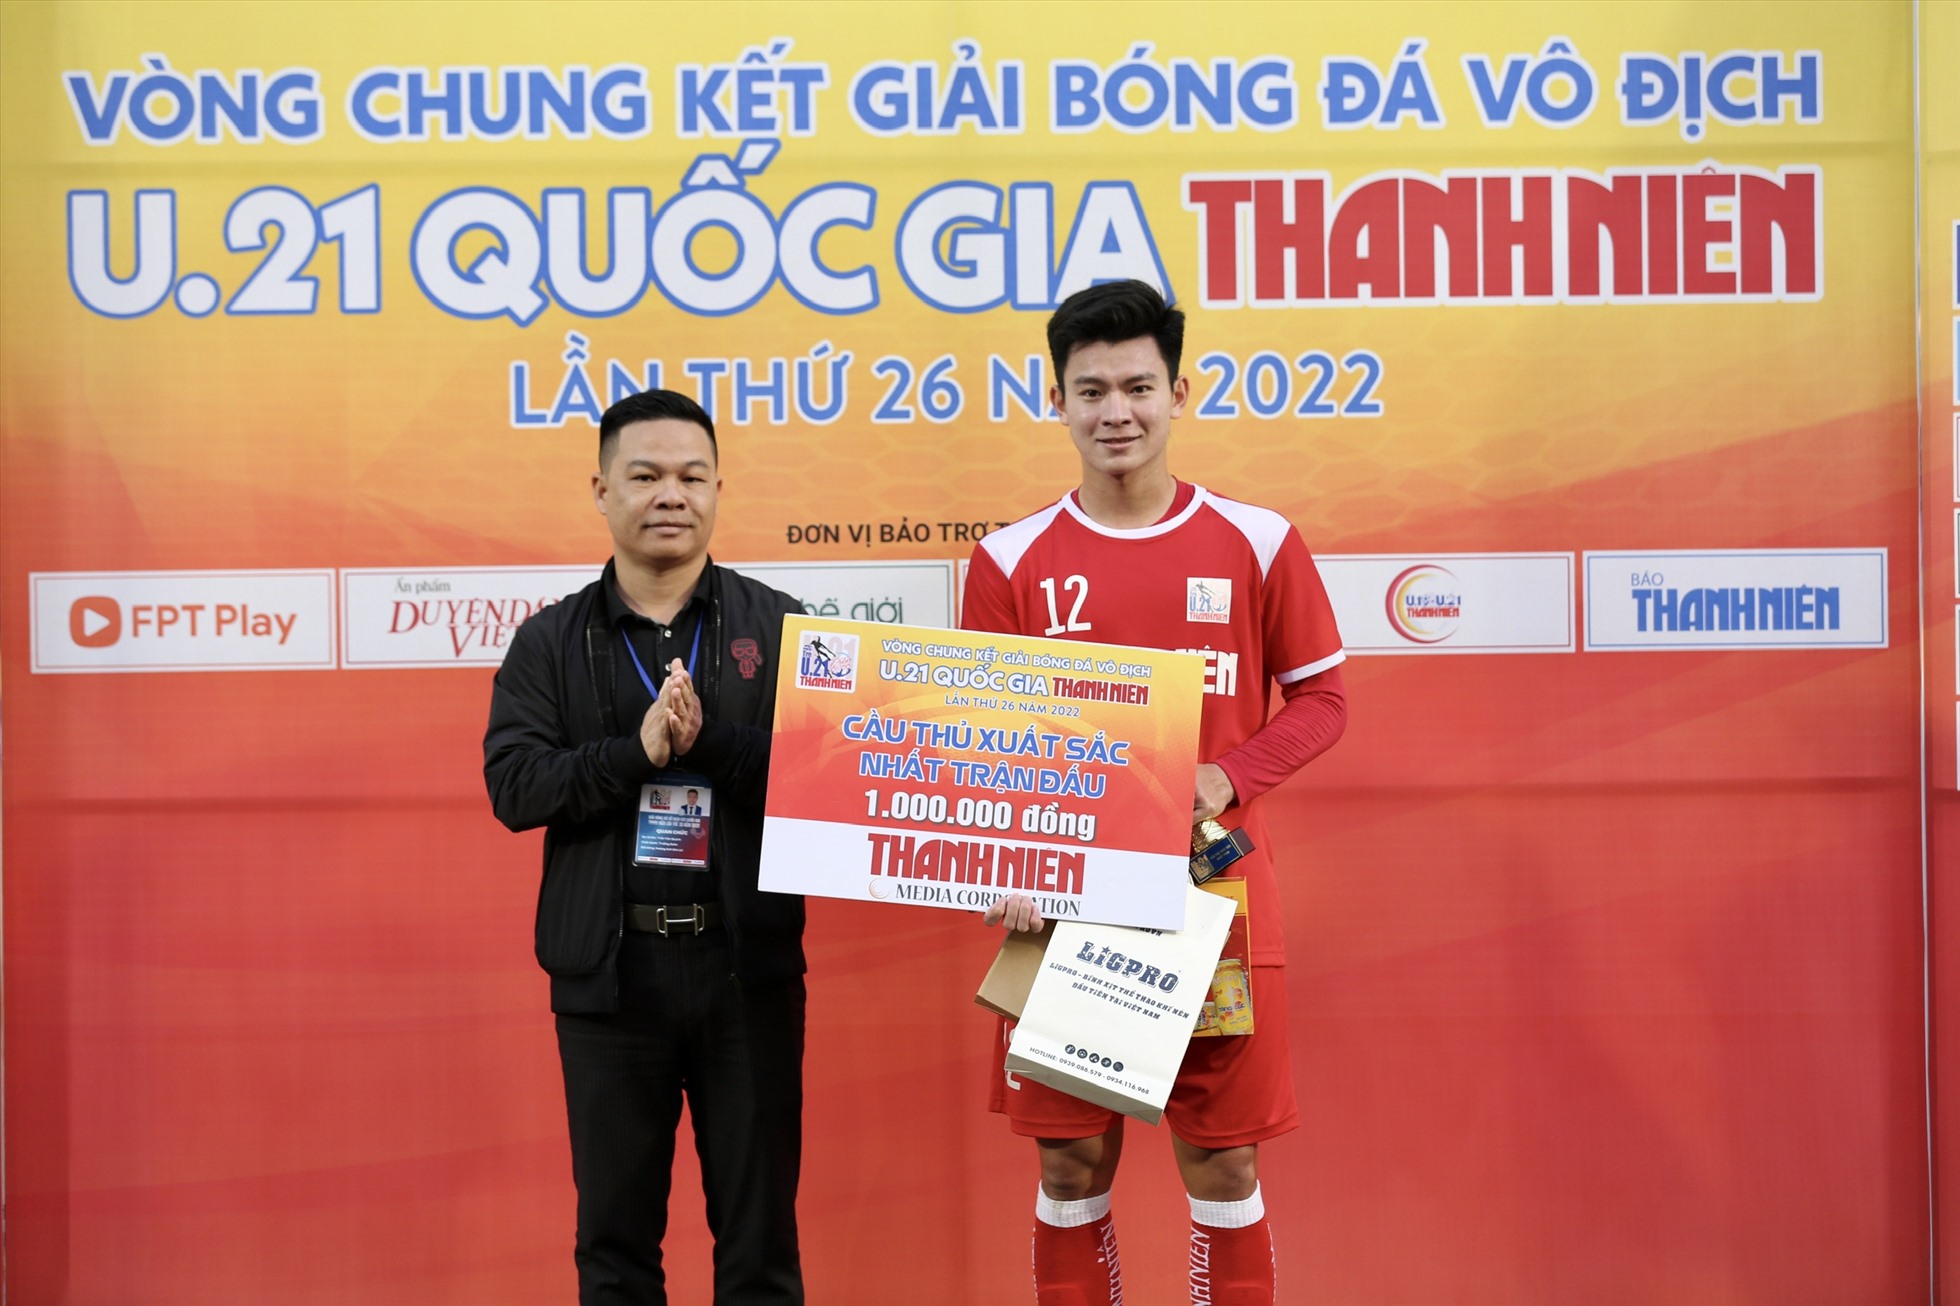 Phan Tuấn Tài cũng nhận cú đúp danh hiệu cá nhân trong trận đấu này khi trở thành cầu thủ xuất sắc nhất trận và cầu thủ ghi bàn đầu tiên của trận đấu.